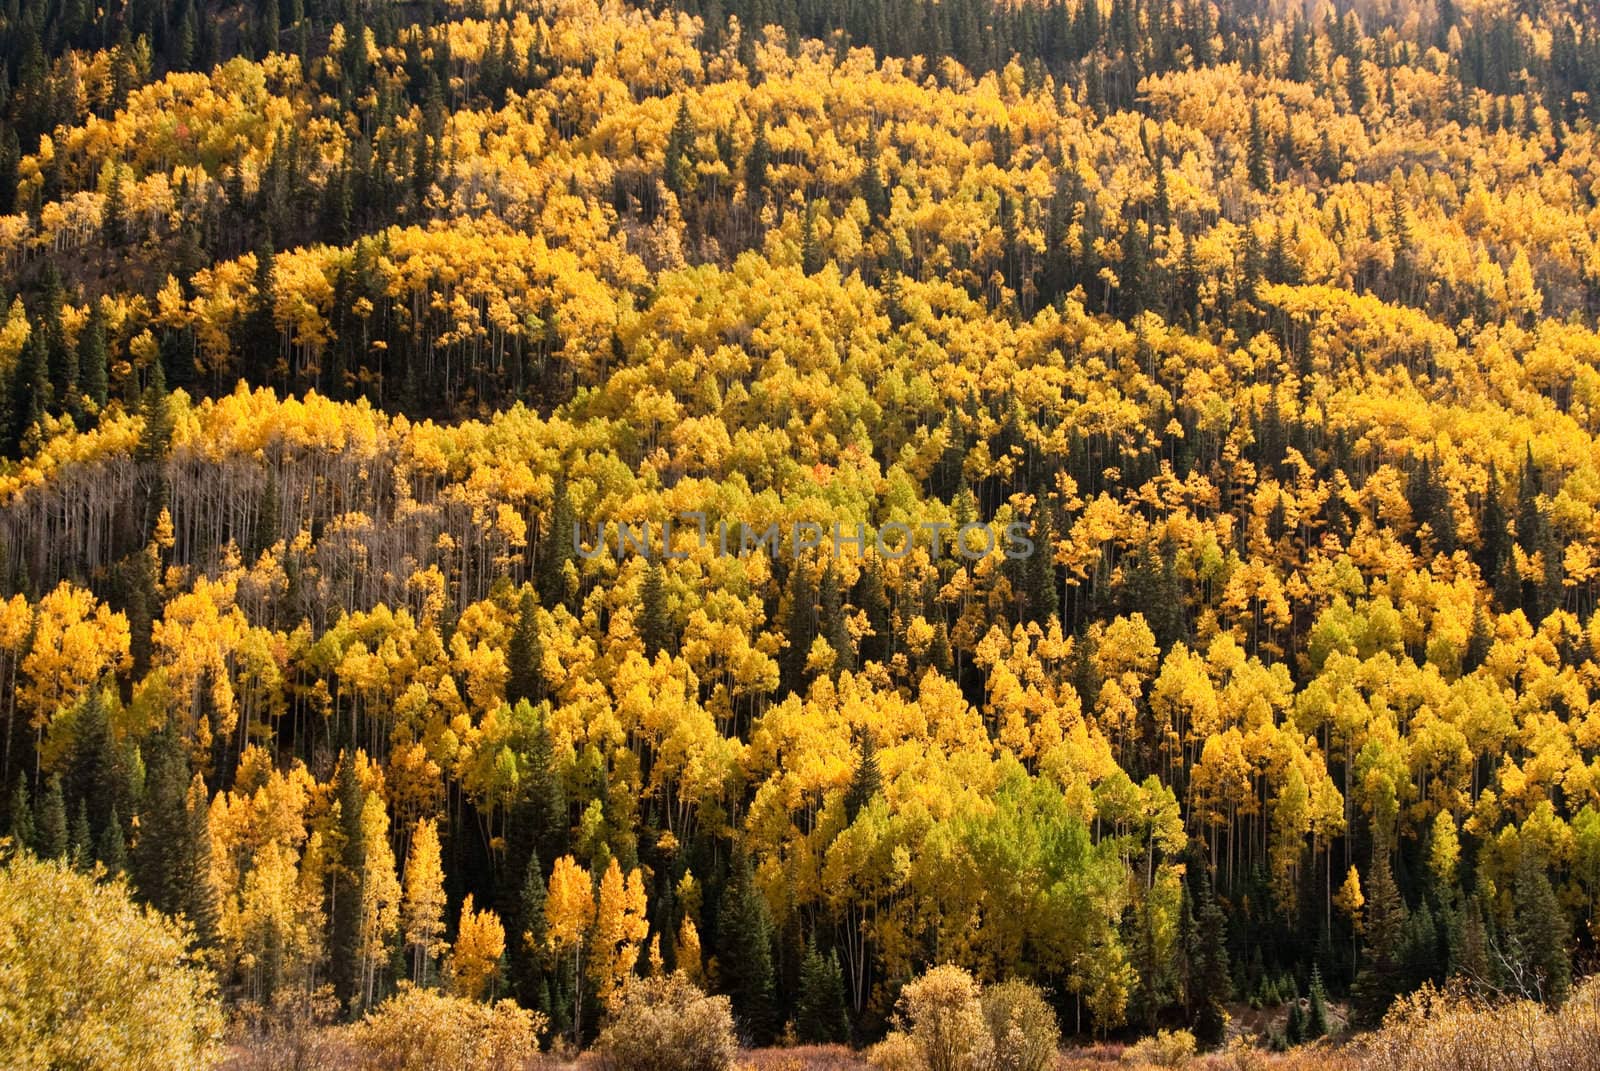 Colorado hillside in full Fall color